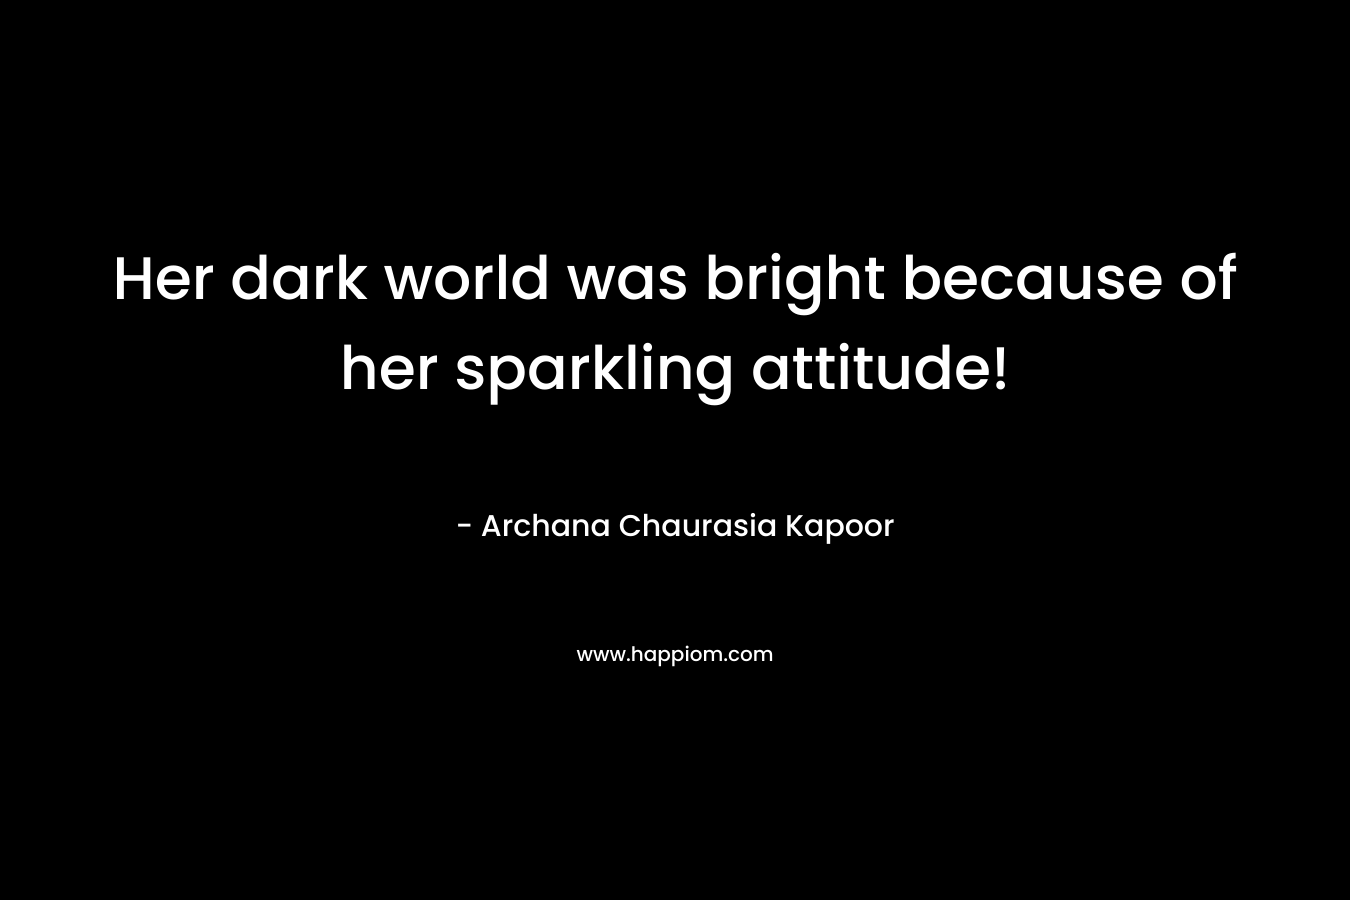 Her dark world was bright because of her sparkling attitude!